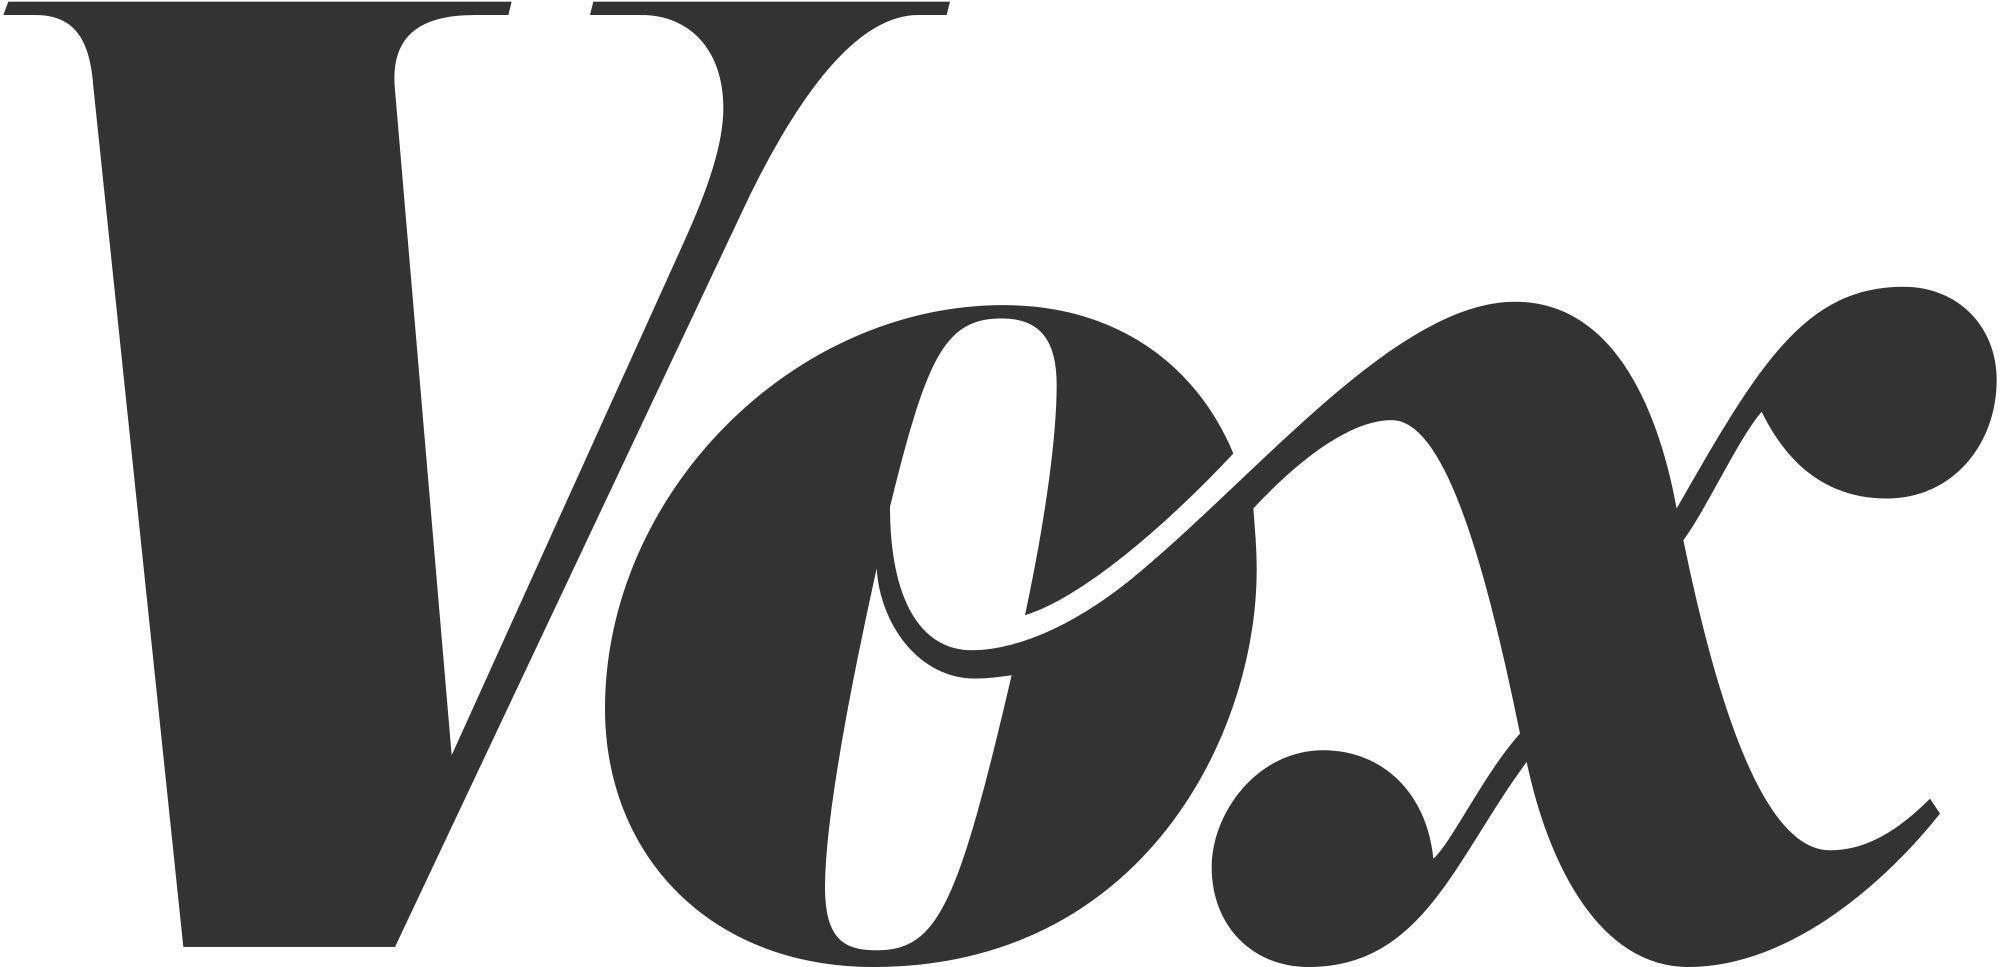 tipografi - Vox logosu hangi yazı tipi kategorisidir? - Grafik Tasarım ...